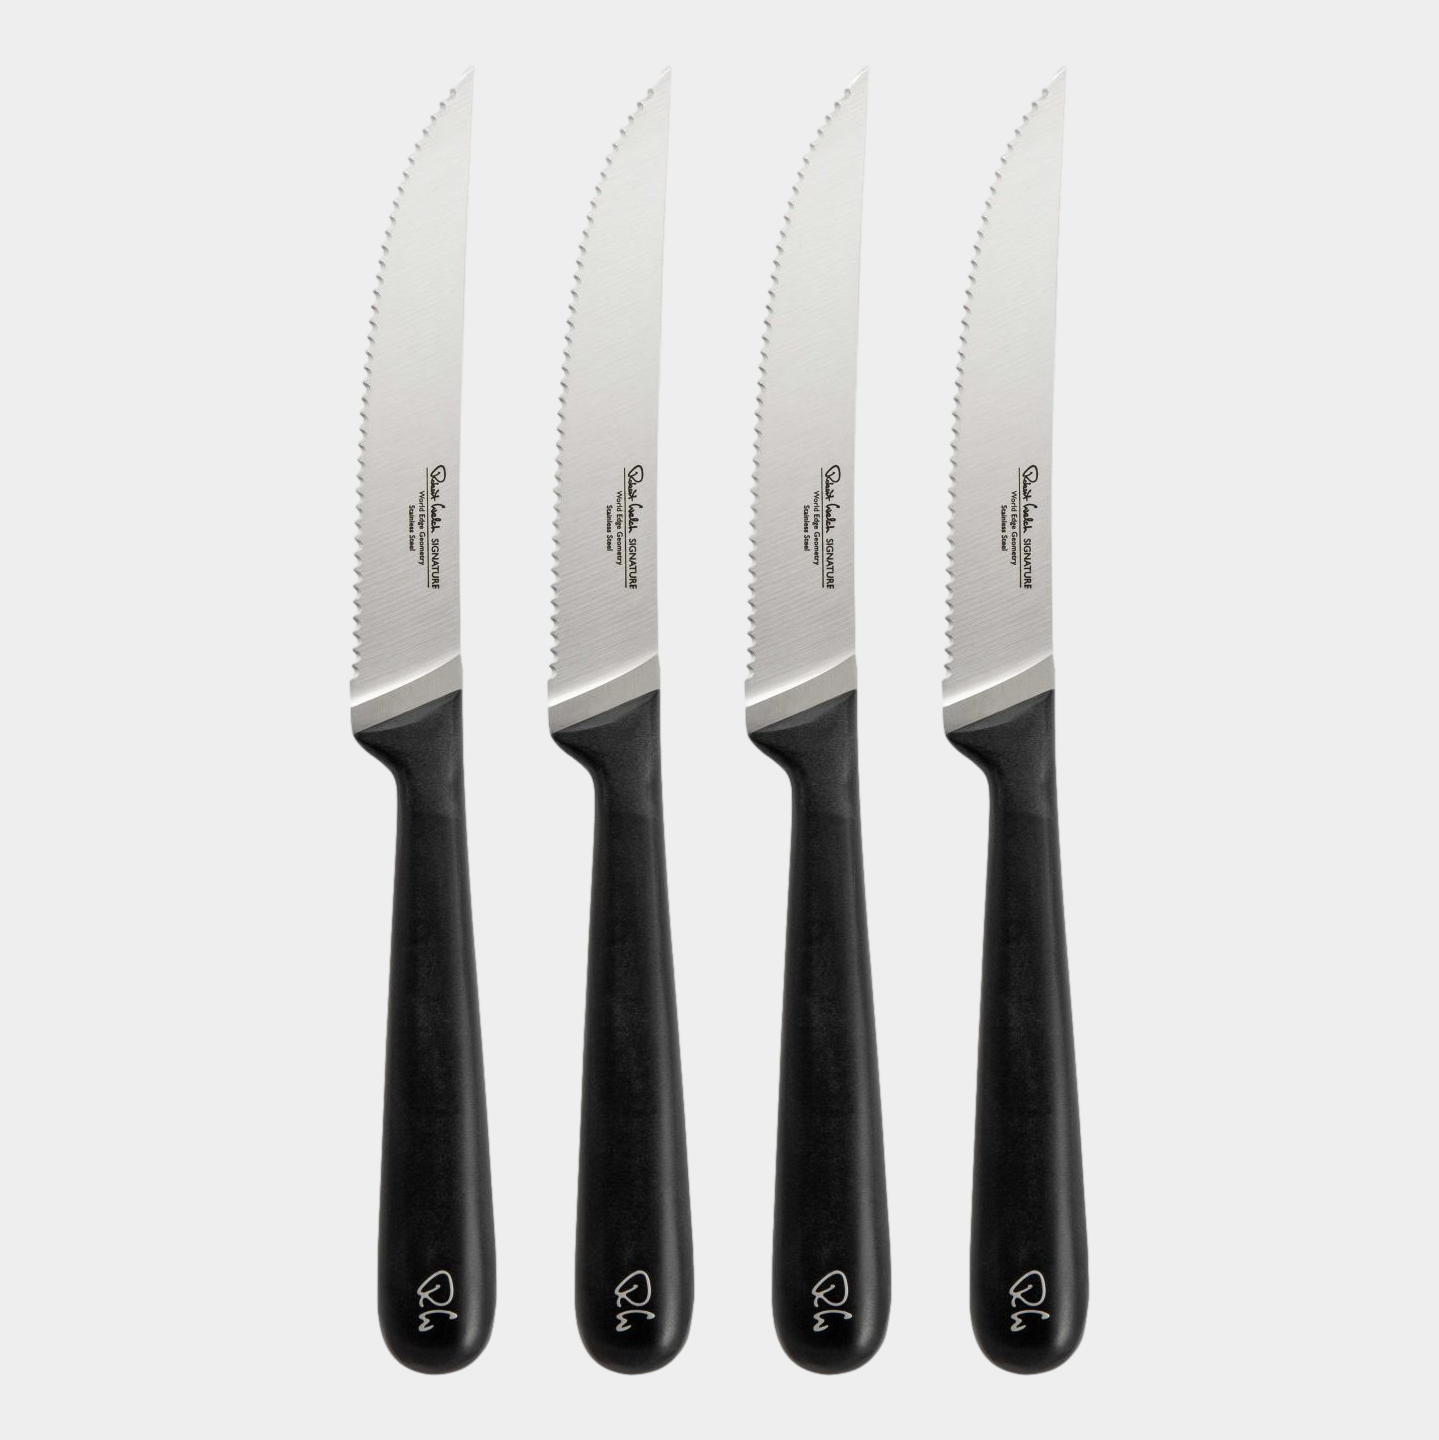 Robert Welch Signature Serrated Steak Knife - Set of 4